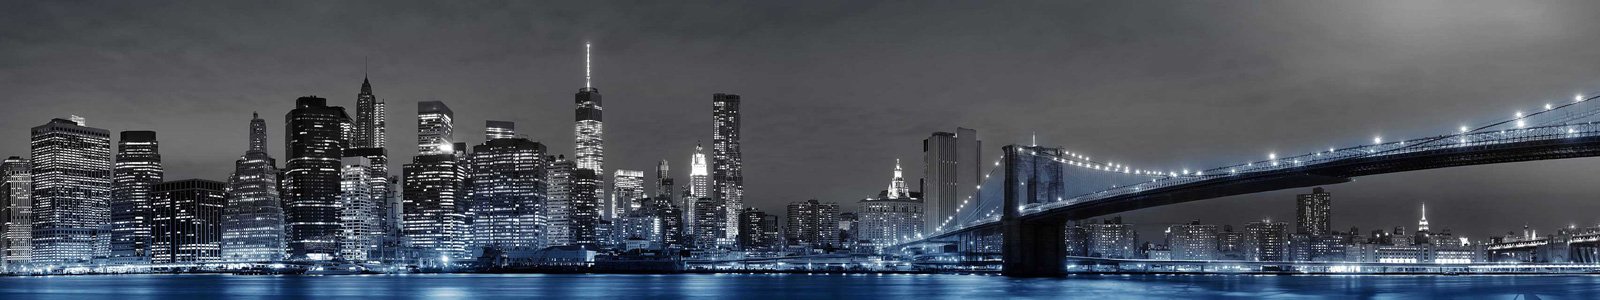 №7236 - Бруклинский мост в Нью-Йорке ночью с синим свечением снизу